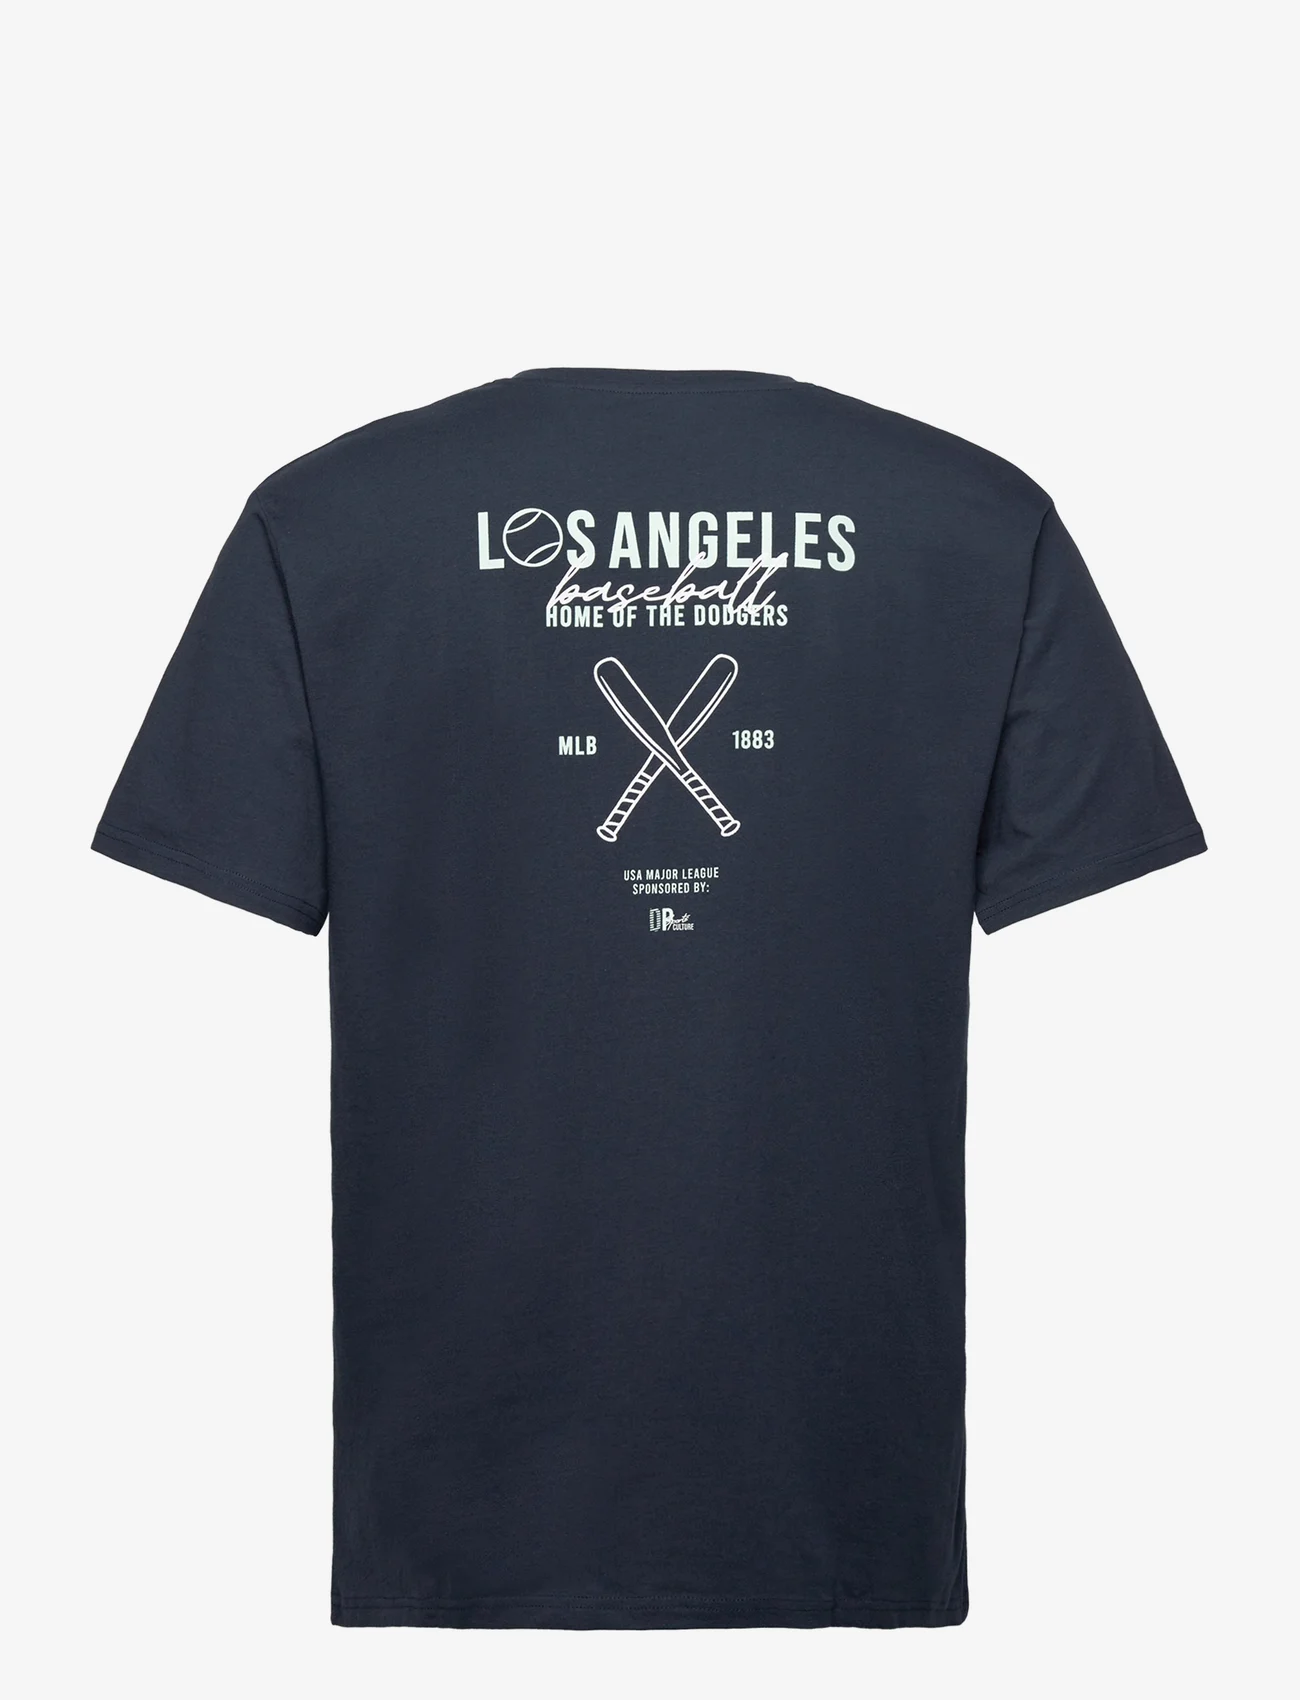 Denim project - DPLos Angeles T-shirt - lowest prices - carbon blue - 1